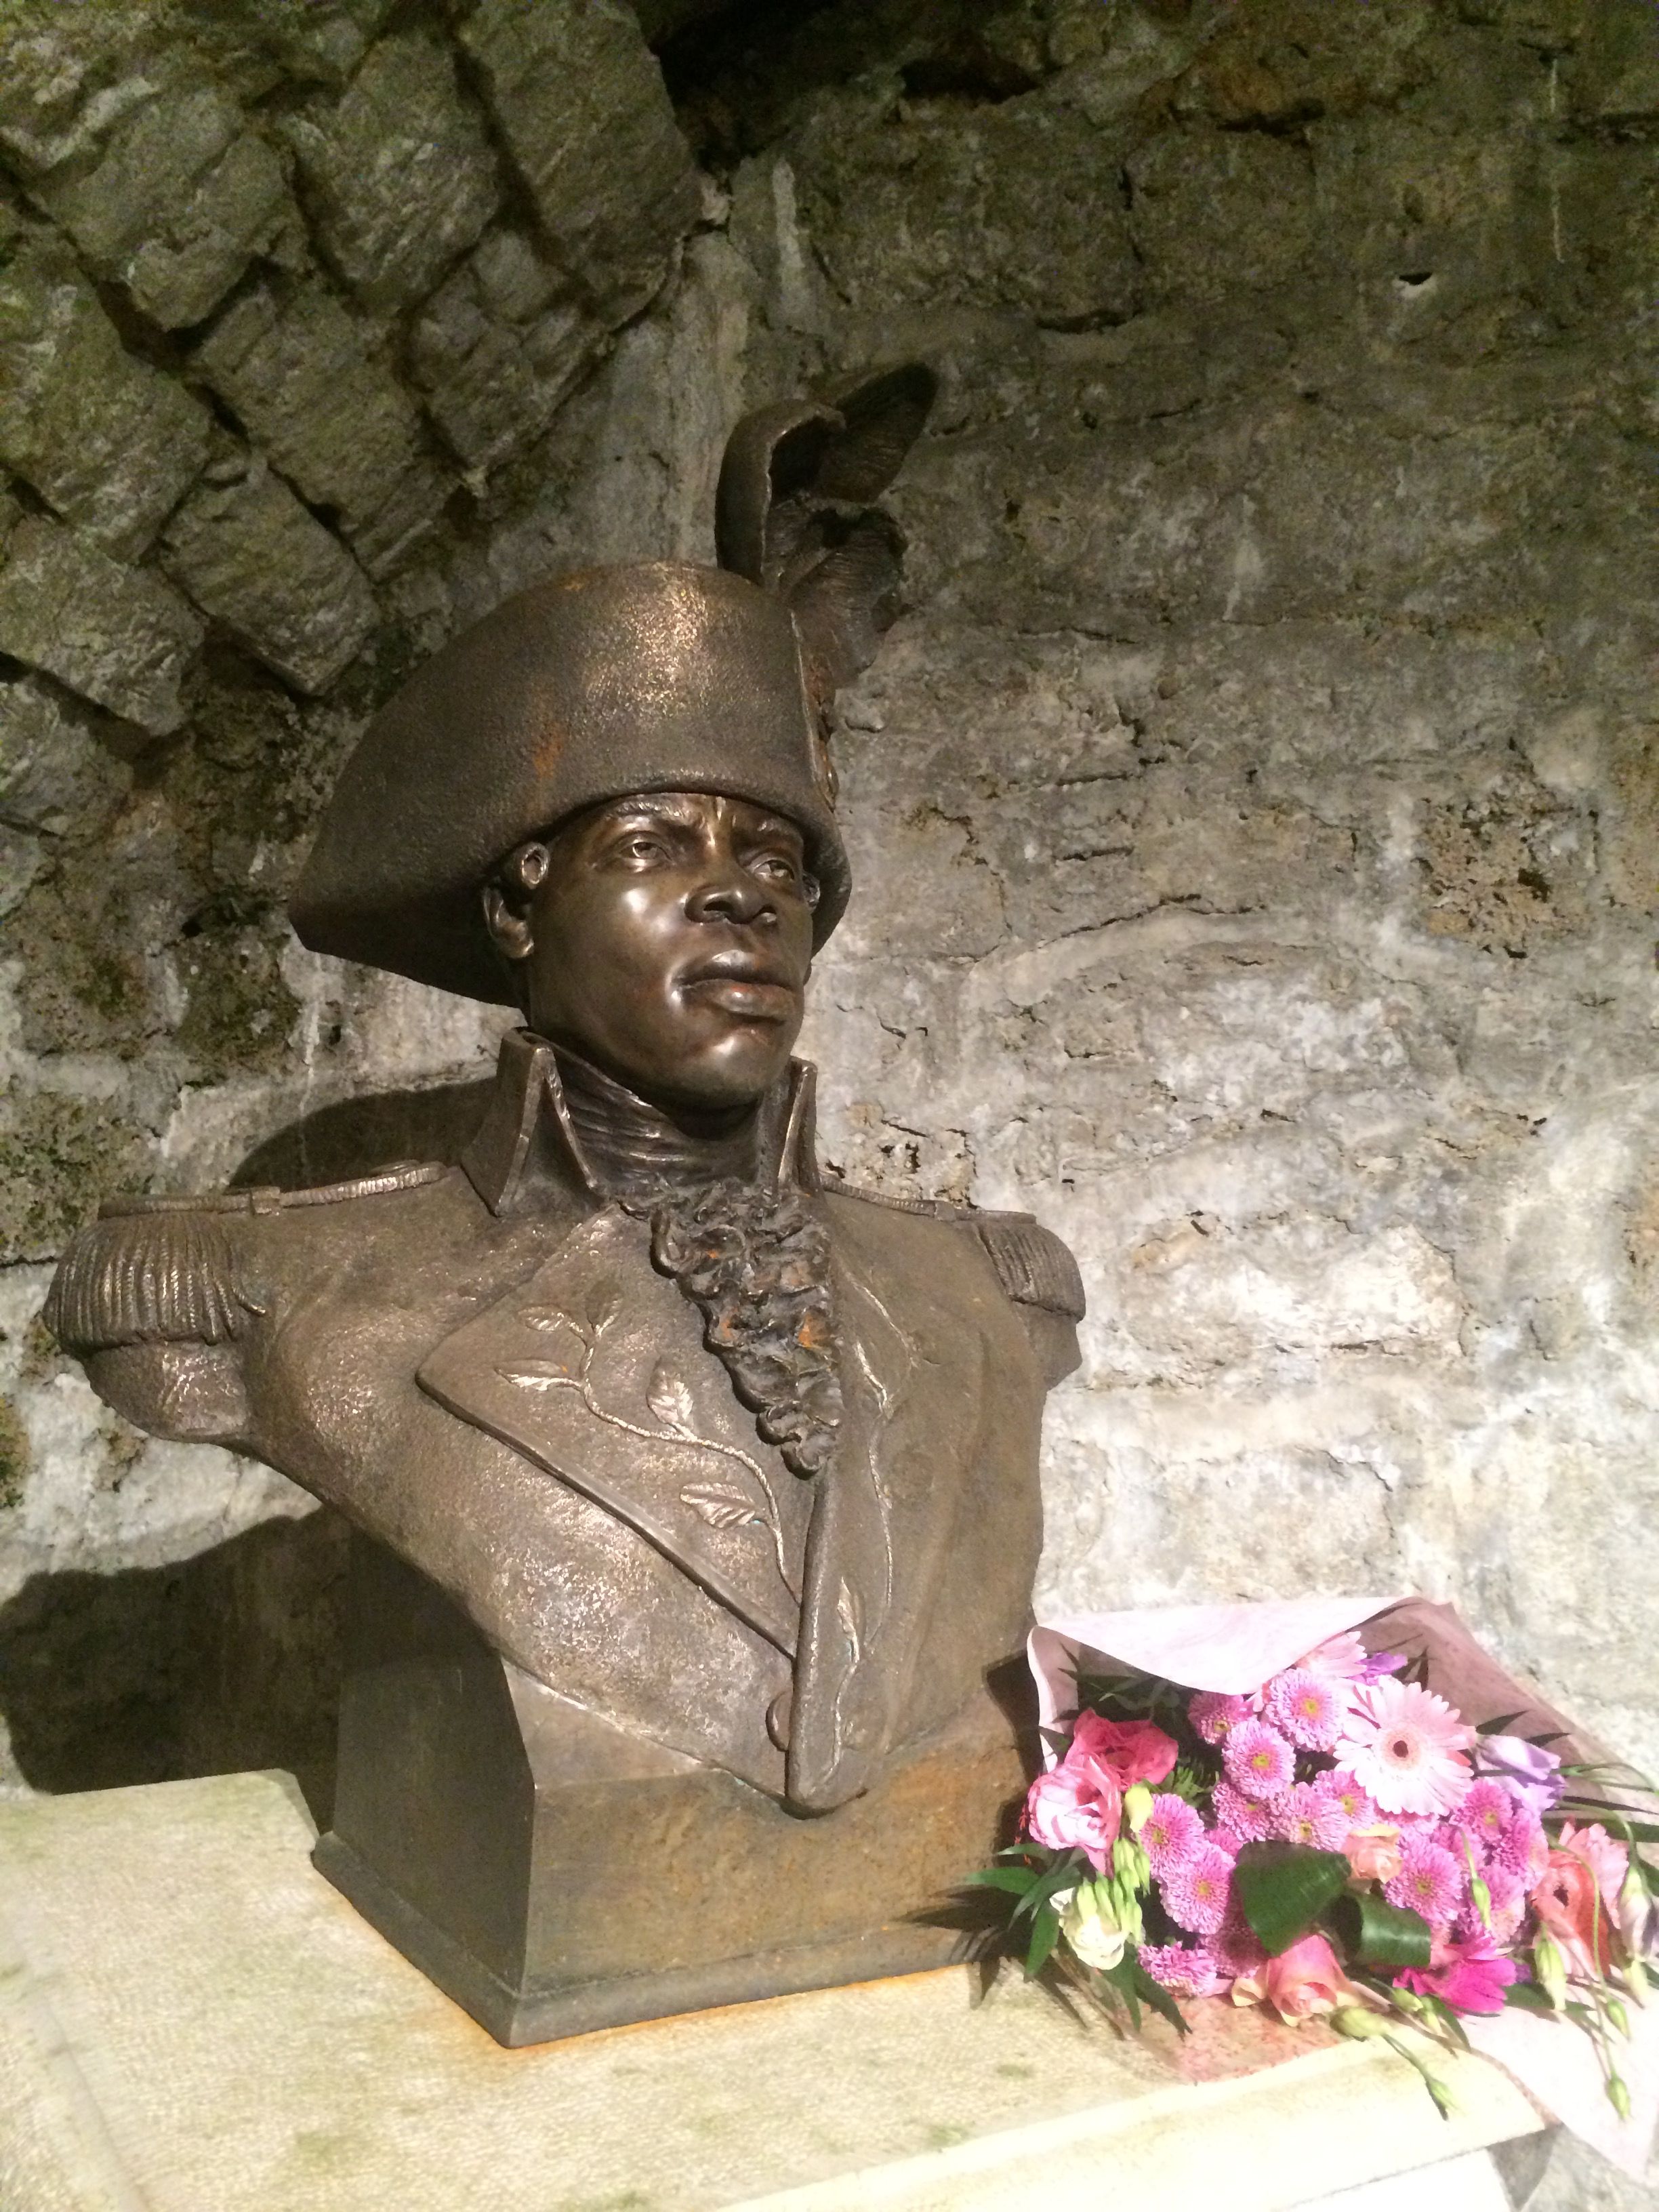 Dans la pièce voisine de la cellule de Toussaint Louverture au fort de Joux, le haut de son buste, fleuri. Chateau de Joux, 2016. (cc)Wikimedia/Chris93